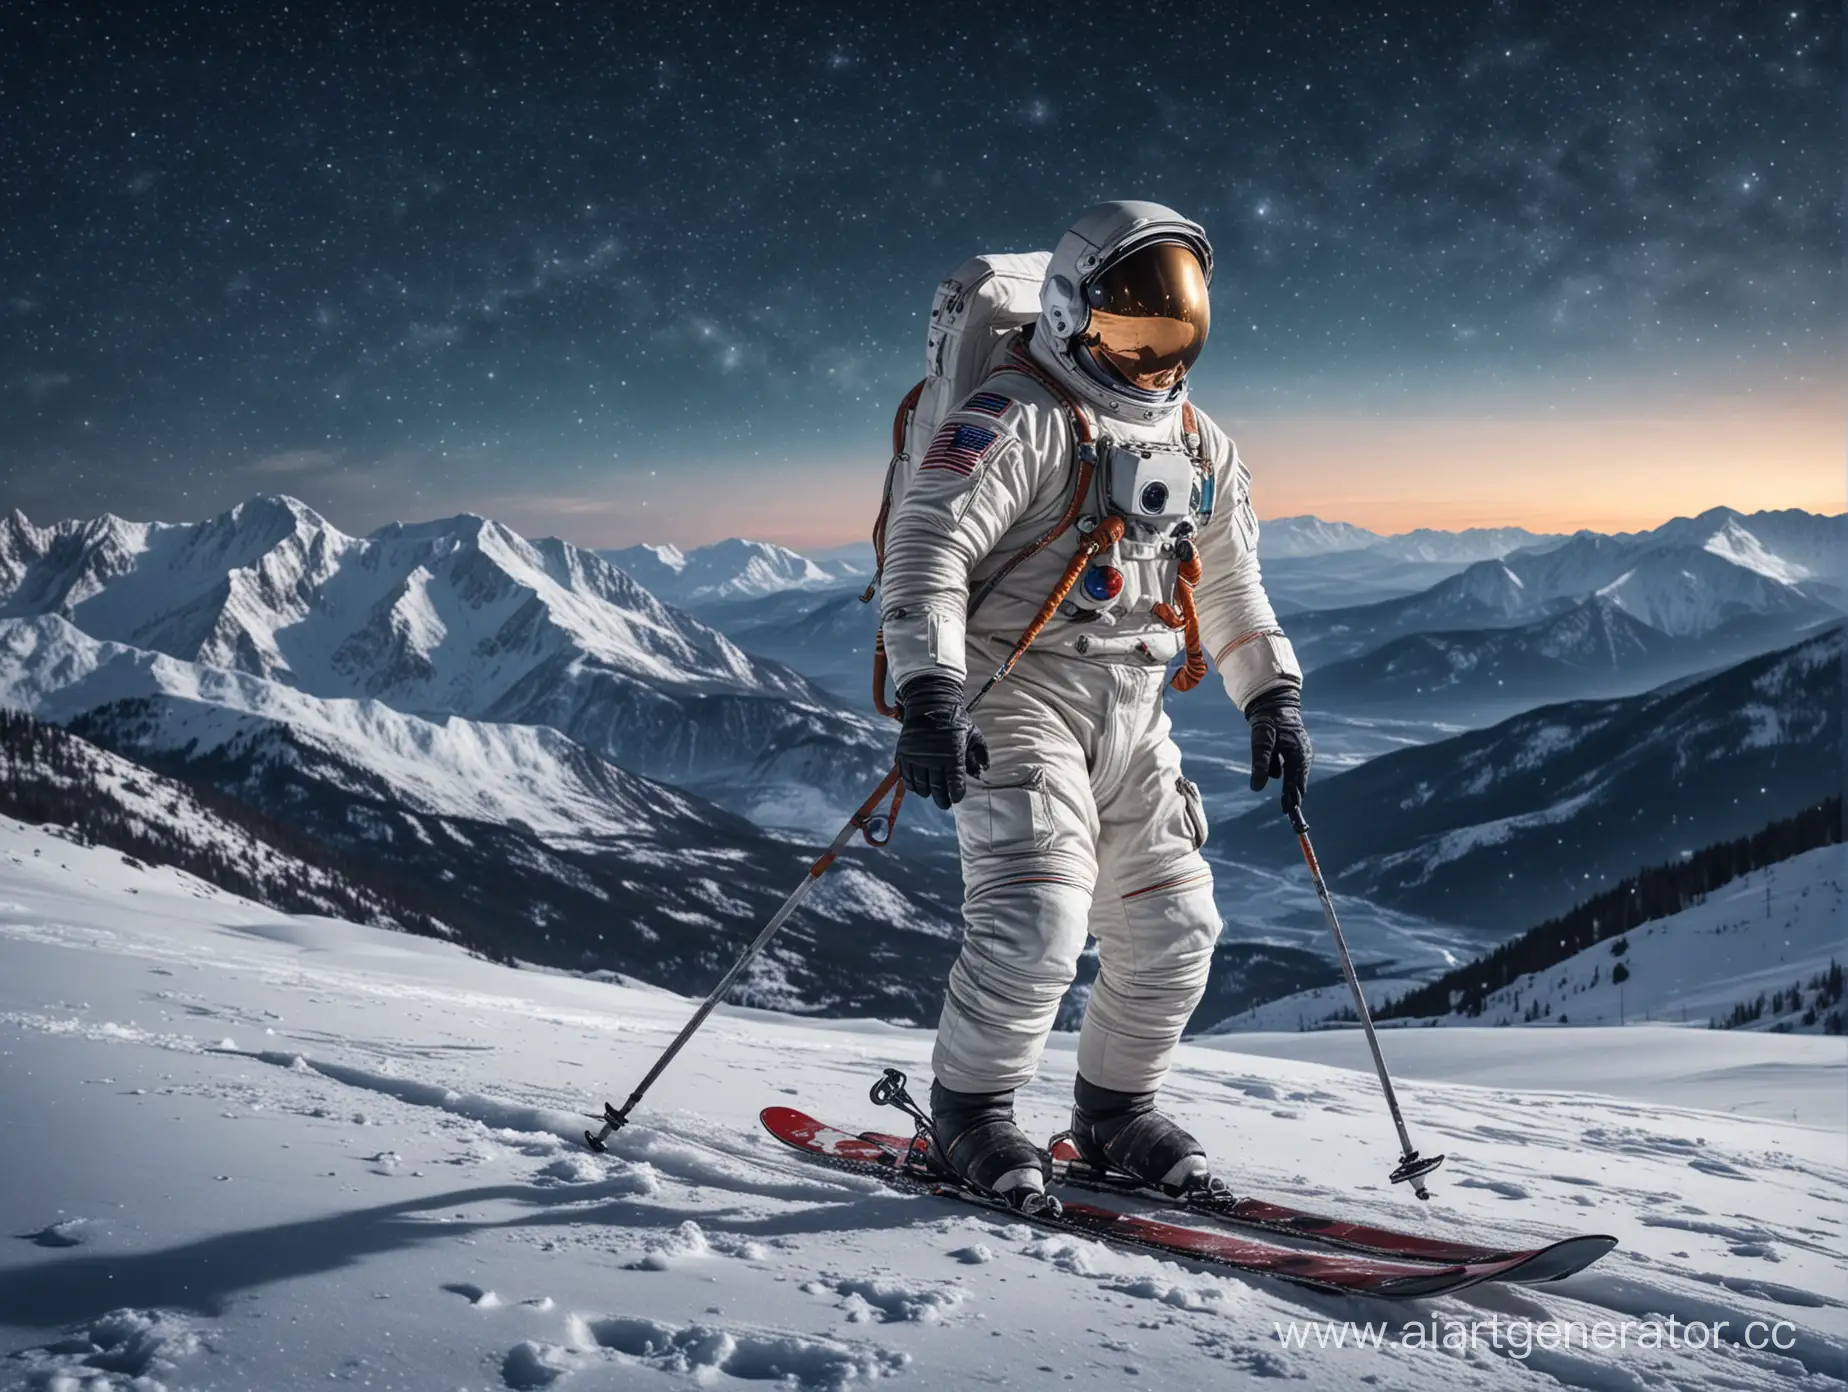 космонавт на лыжах. на фоне гор и звёздного неба